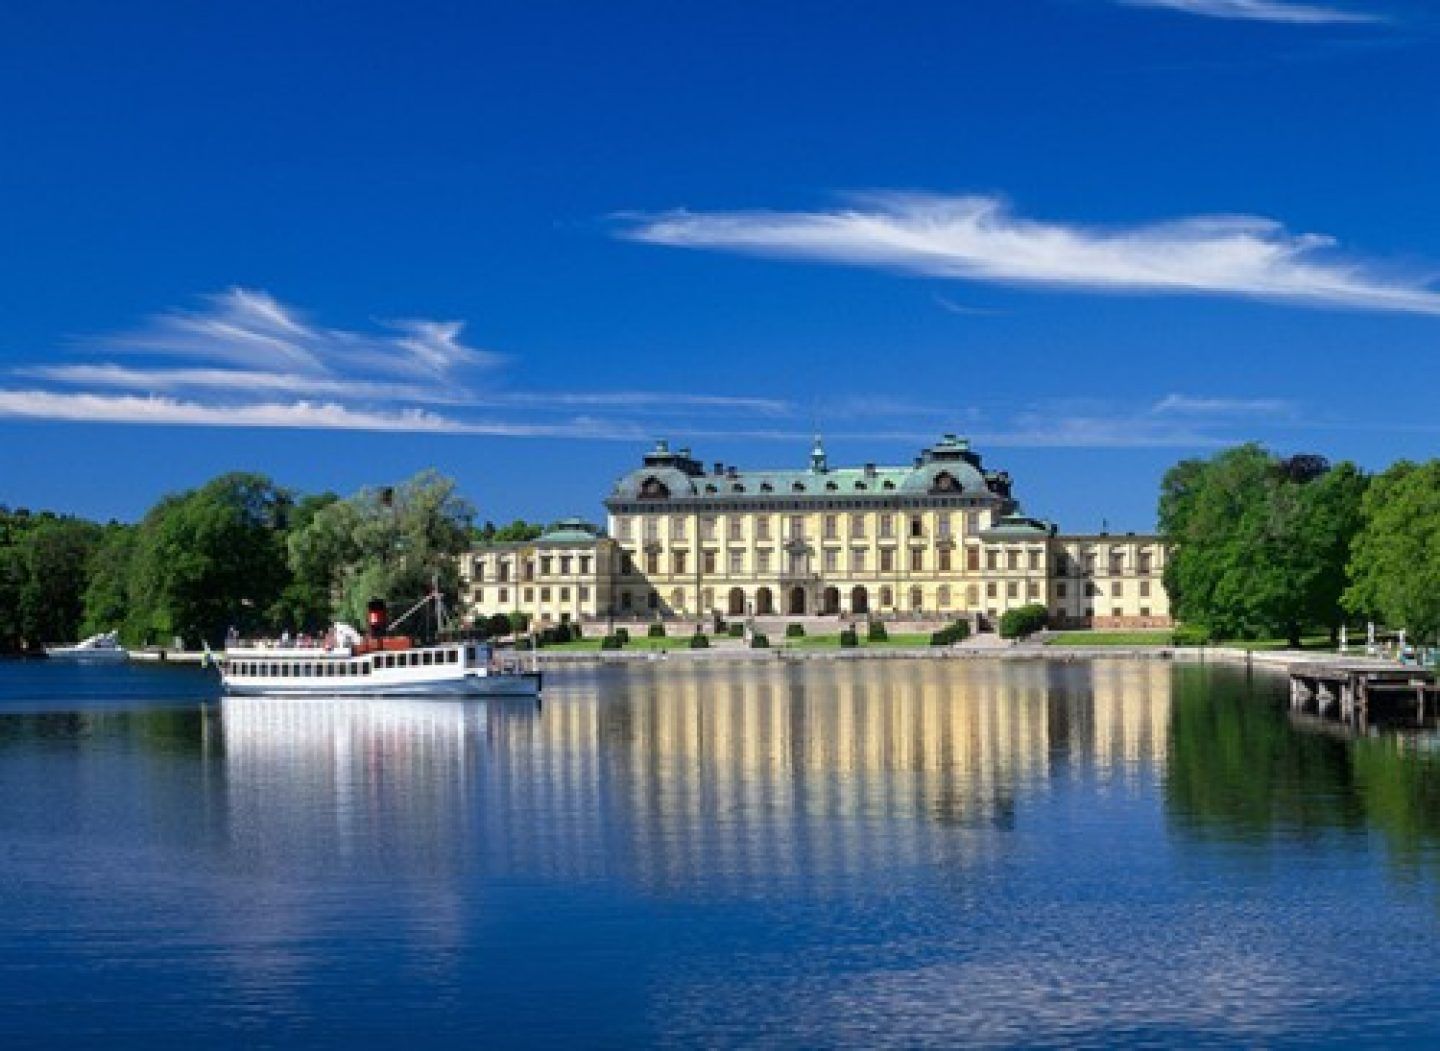 Cung điện Hoàng gia Drottningholm – Thụy Điển